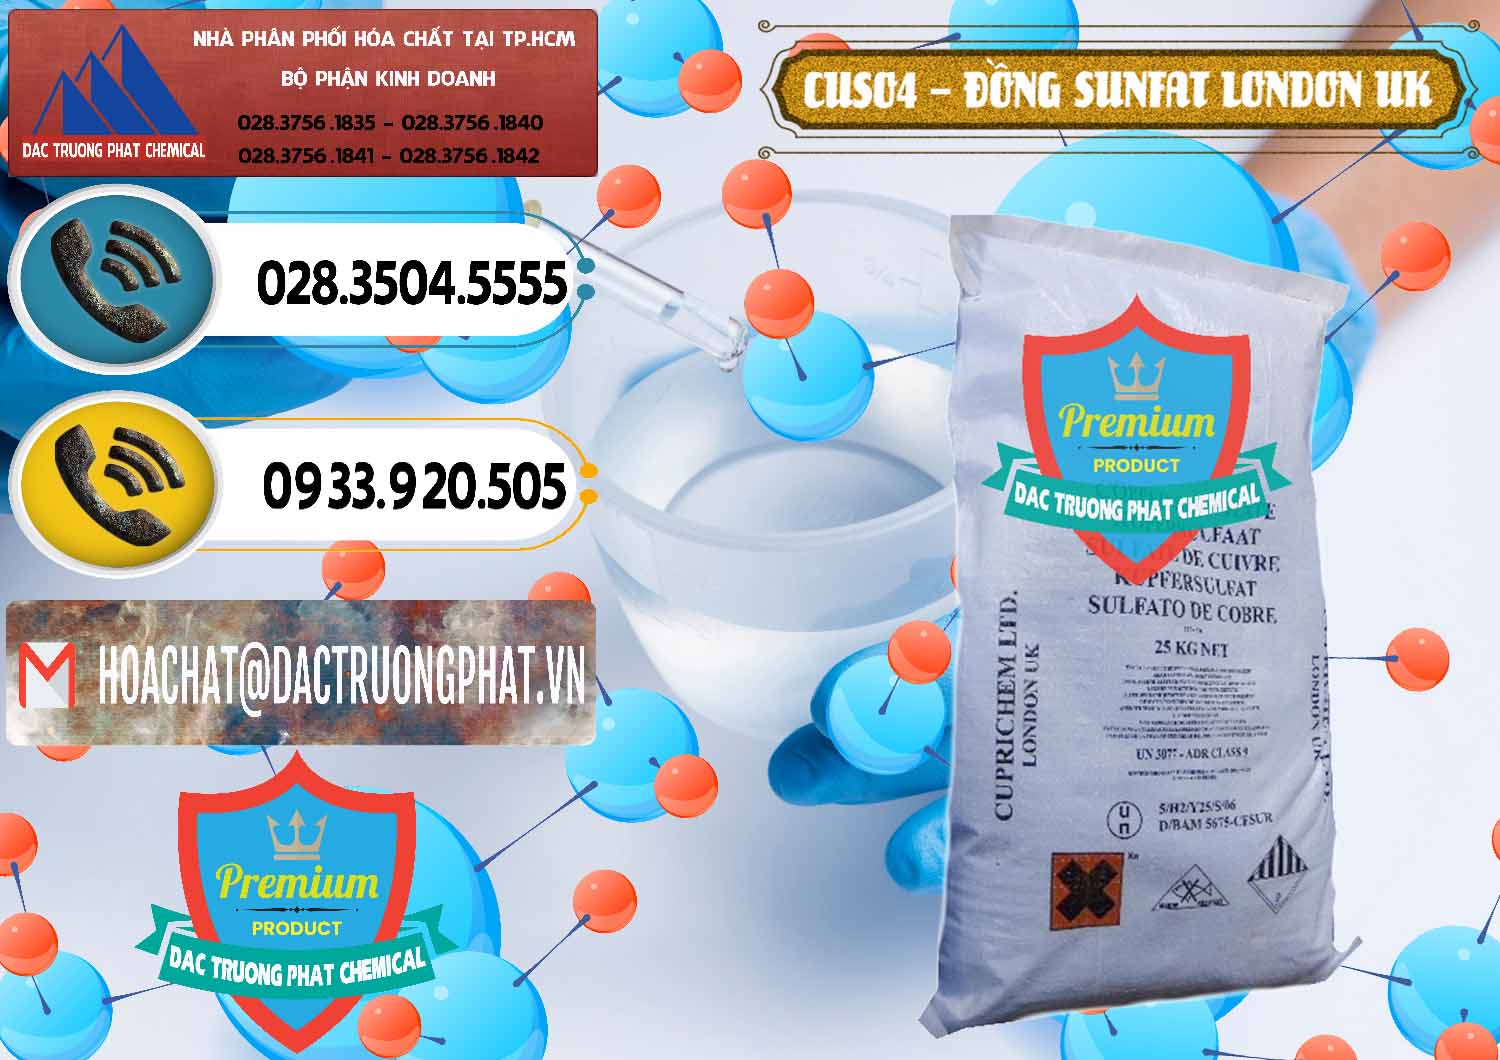 Cty cung ứng & bán CuSO4 – Đồng Sunfat Anh Uk Kingdoms - 0478 - Nơi phân phối - bán hóa chất tại TP.HCM - hoachatdetnhuom.vn